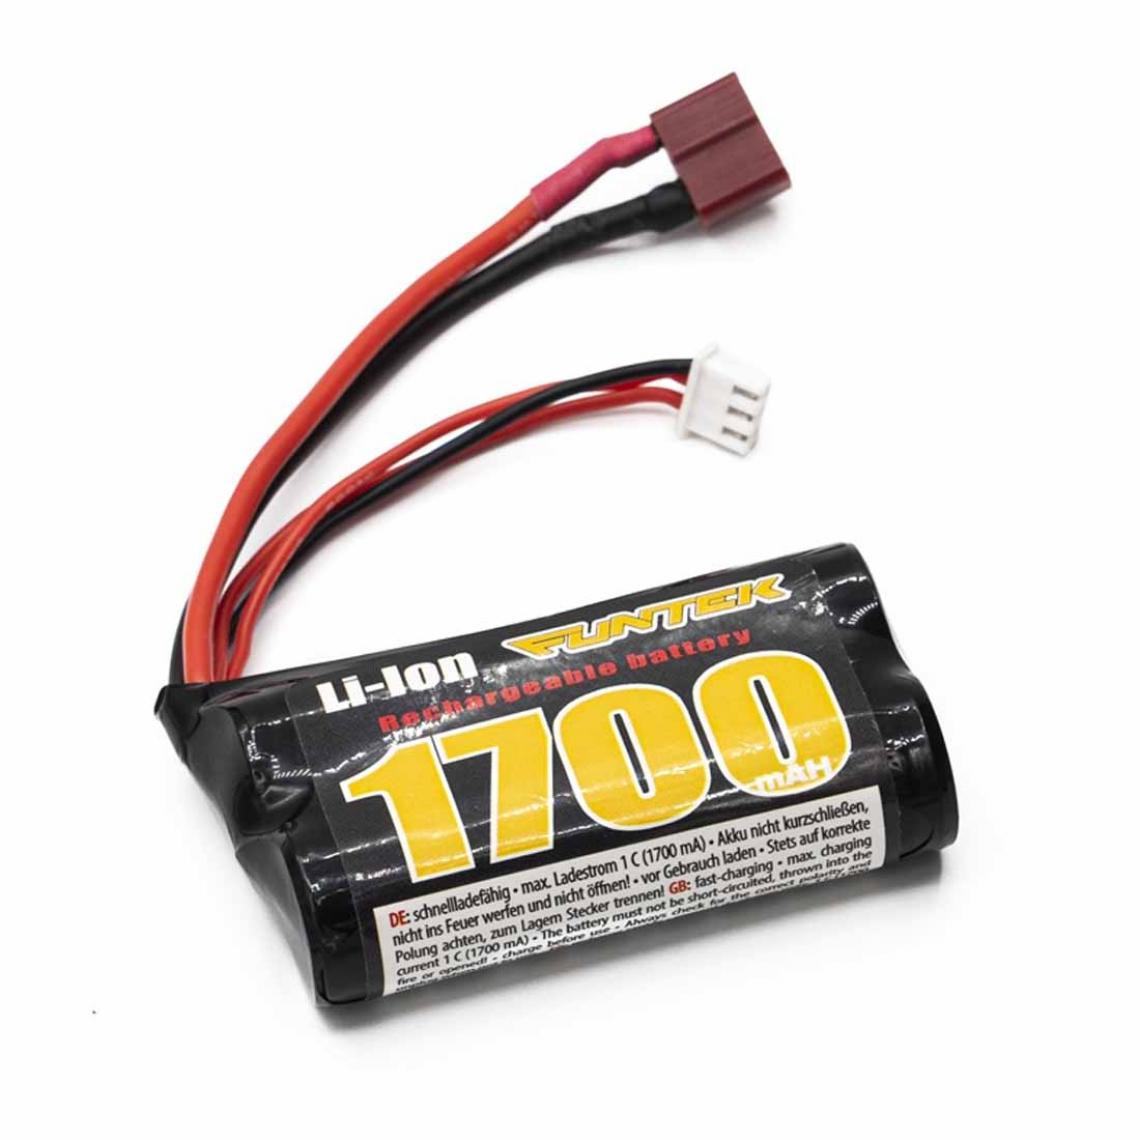 Funtek - Batterie LI-ION Funtek 1700 mAh Dean T Plug - Batteries et chargeurs